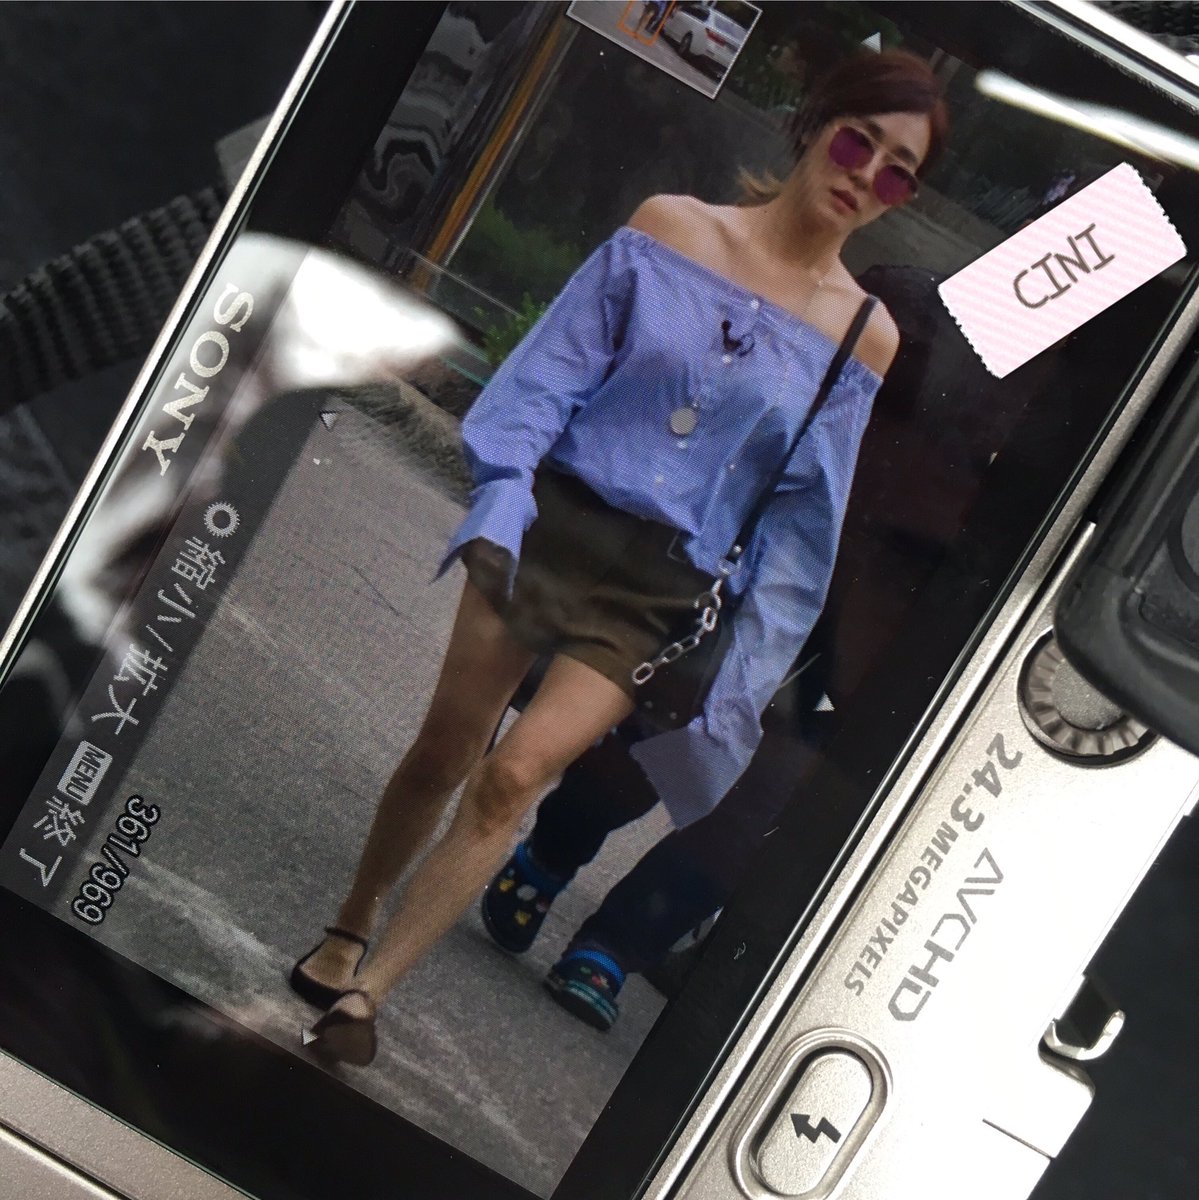 [PIC][01-07-2016]Tiffany xuất hiện tại tòa nhà KBS để quảng bá cho "SHUT UP" - Page 2 CmPa3zsUkAAXX7N